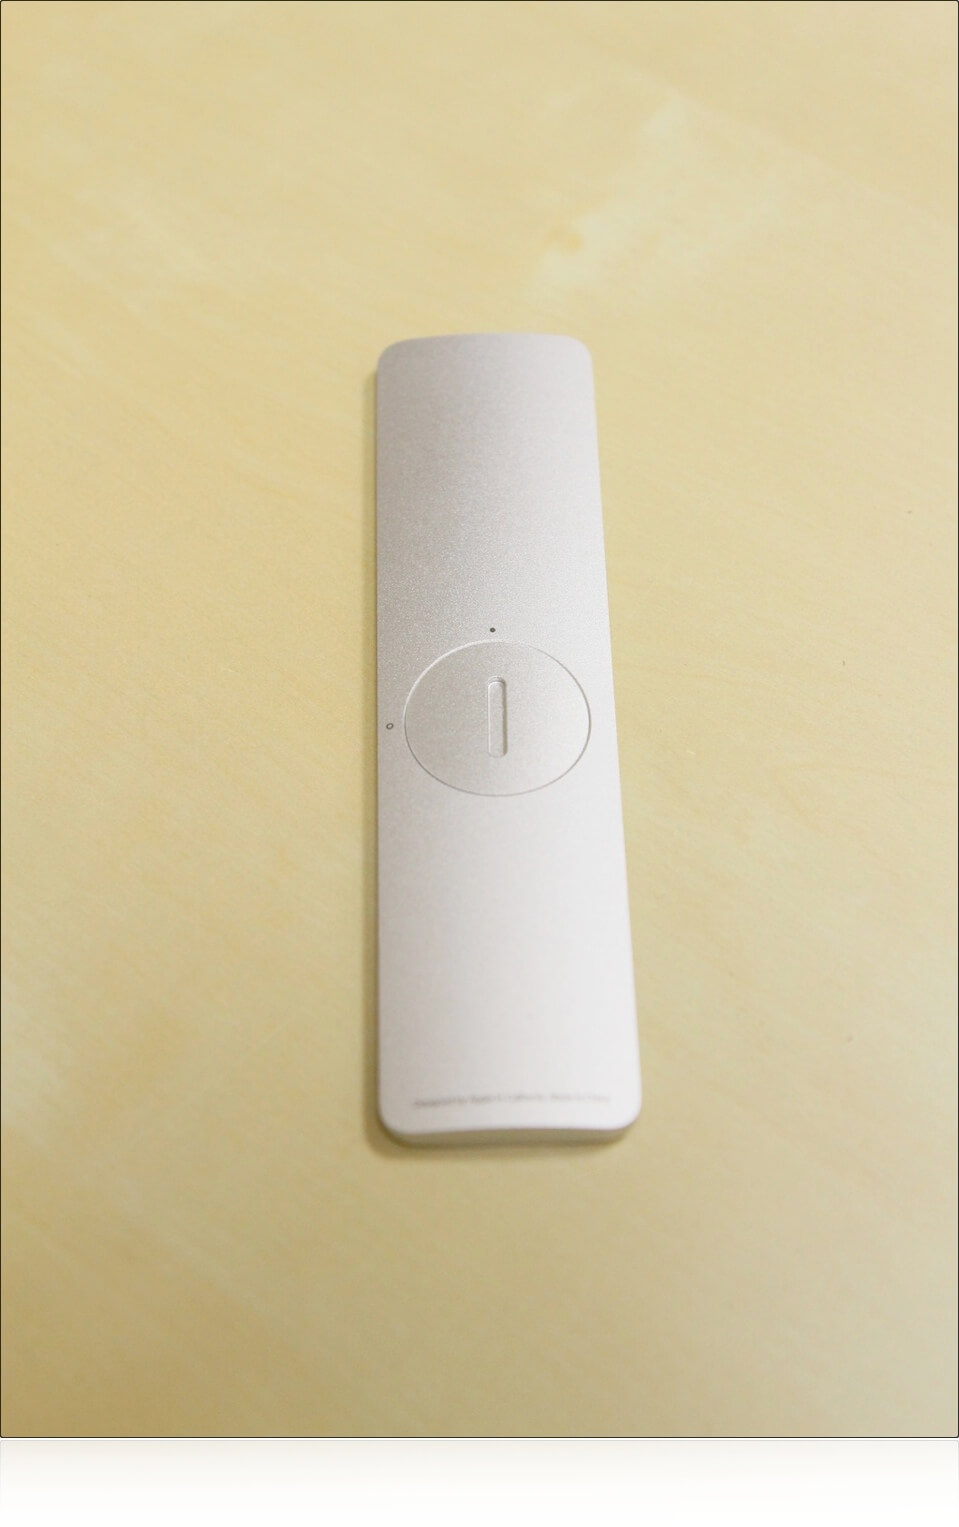 Практика использования Apple Remote. Фото.